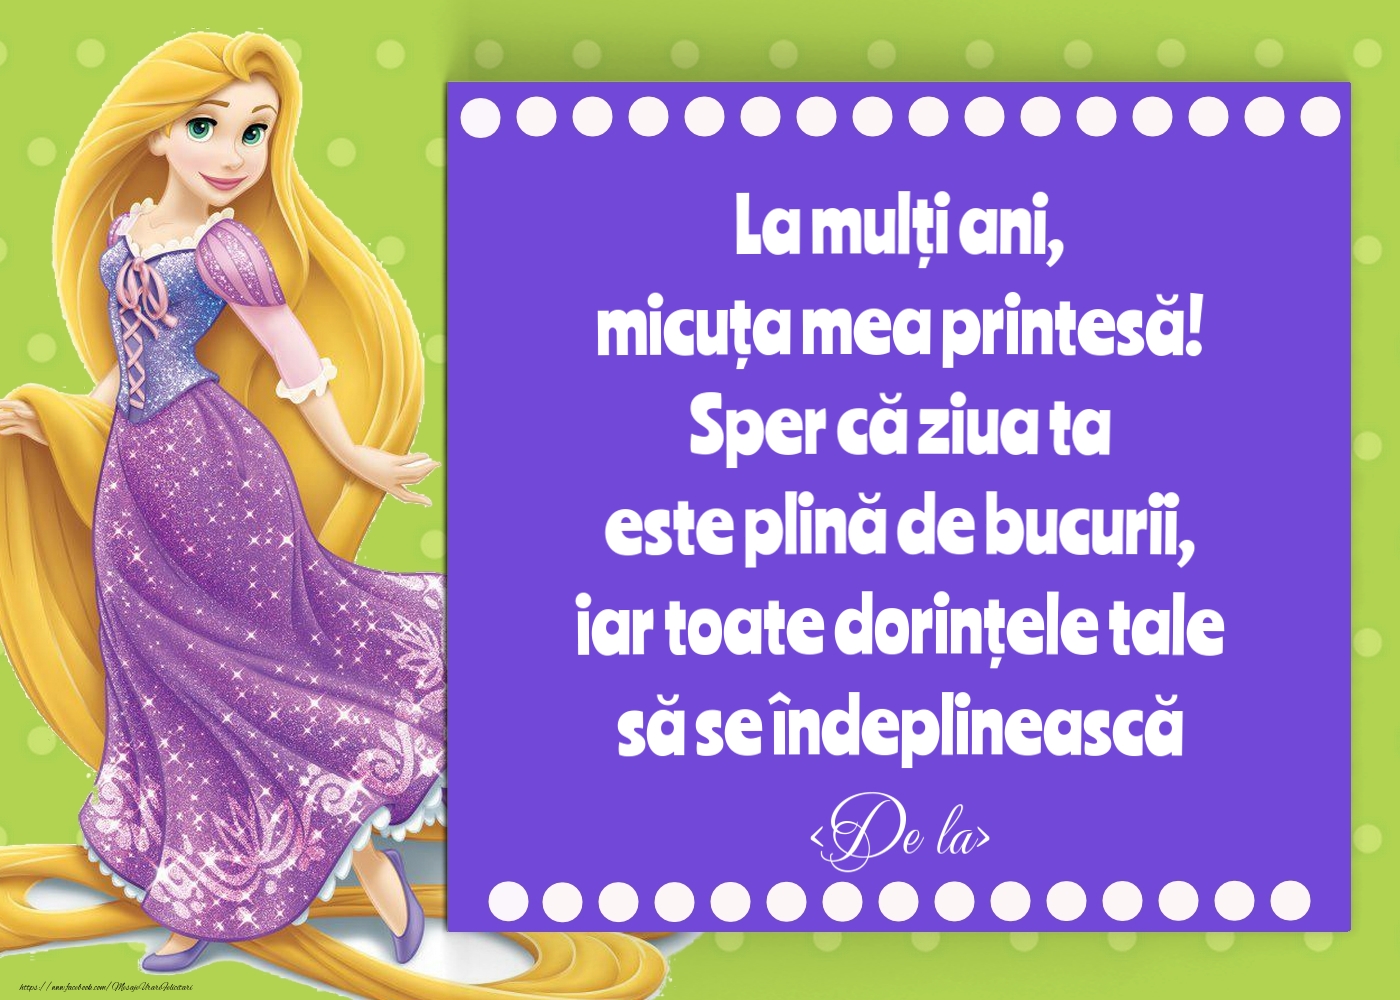 Felicitari personalizate pentru copii - Felicitare cu Rapunzel pe fundal albastru - model pentru fetițe